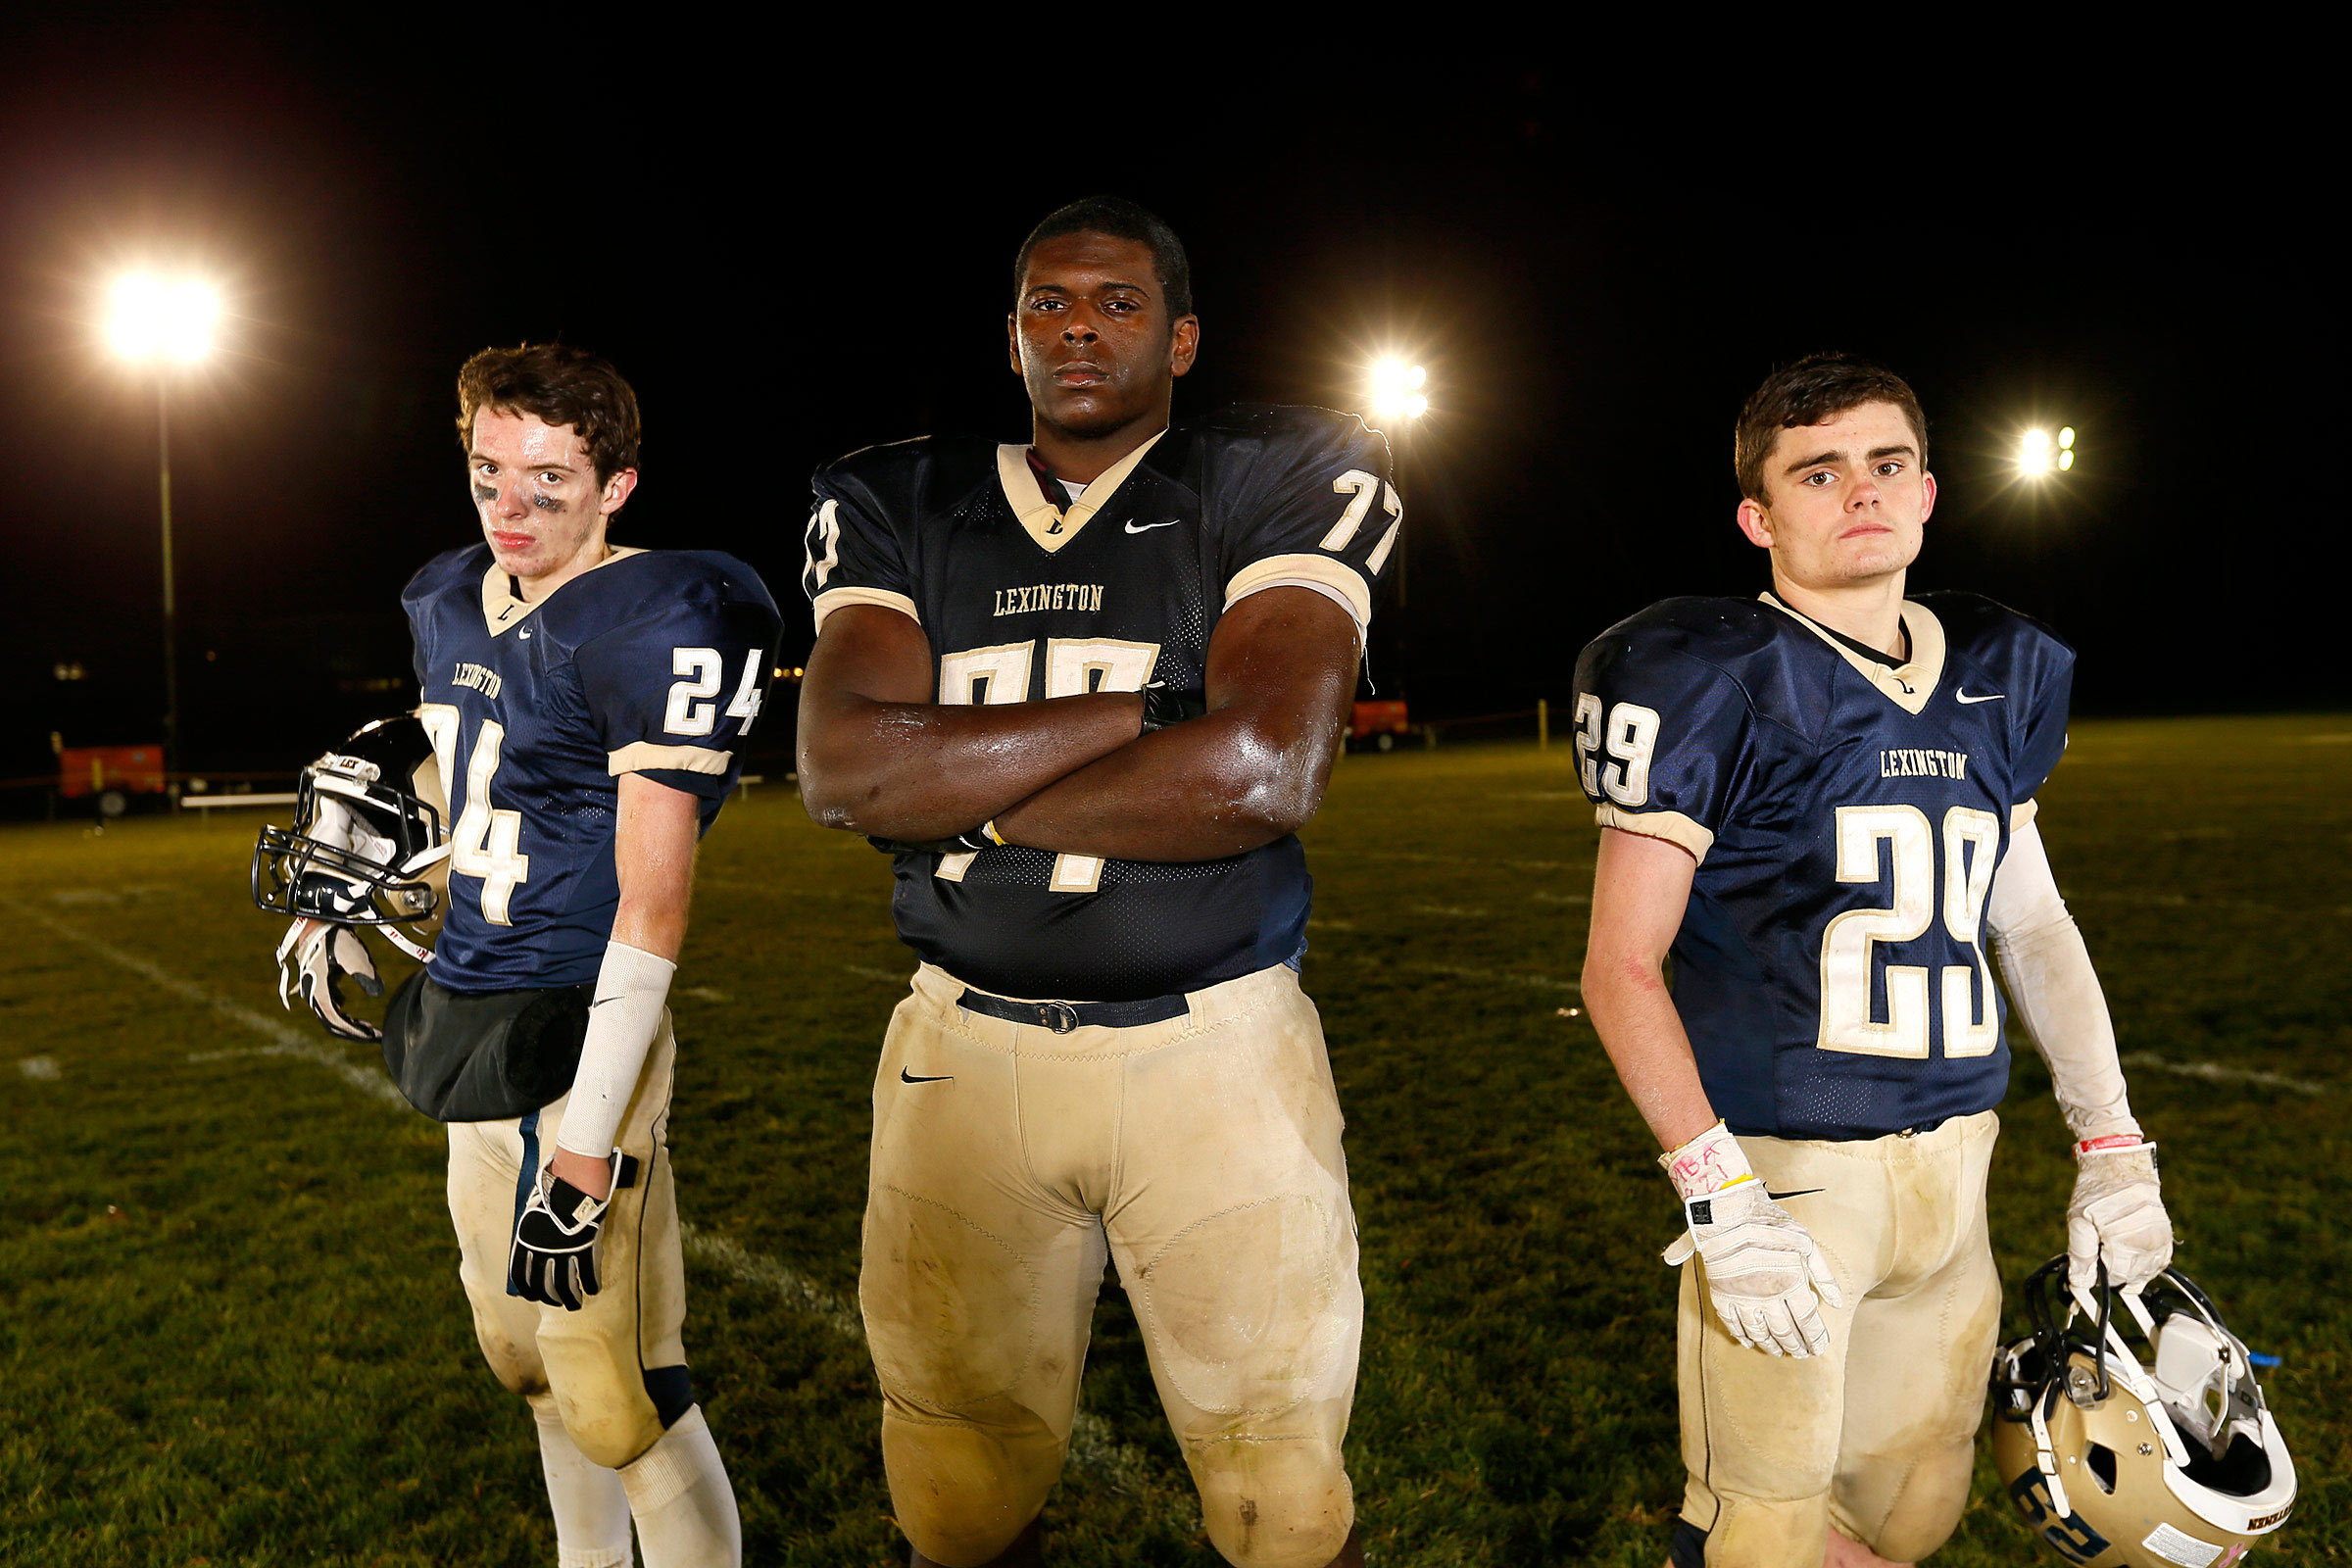 Friday Night Lights for Lexington High School football captains.